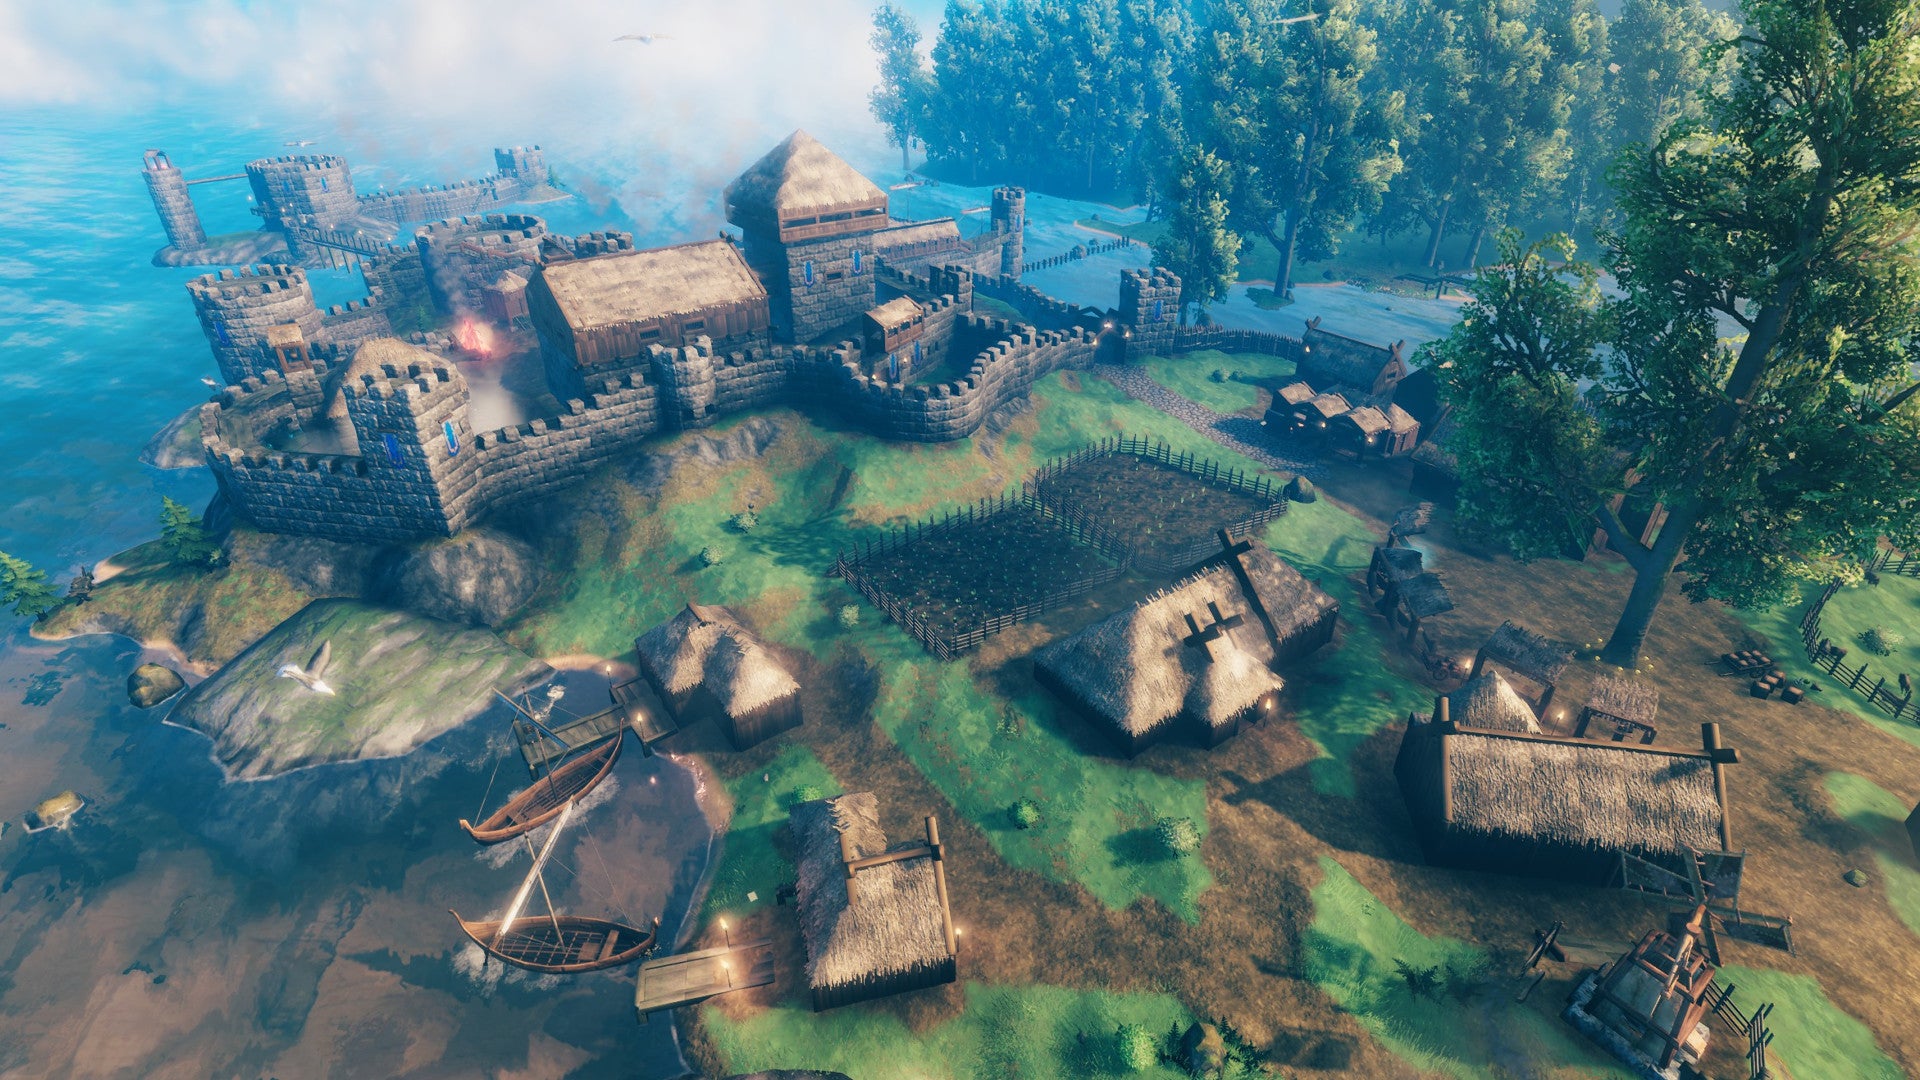 Une capture d'écran de Valheim d'une vaste colonie avec plusieurs maisons, murs et fermes, vue d'un point de vue aérien.